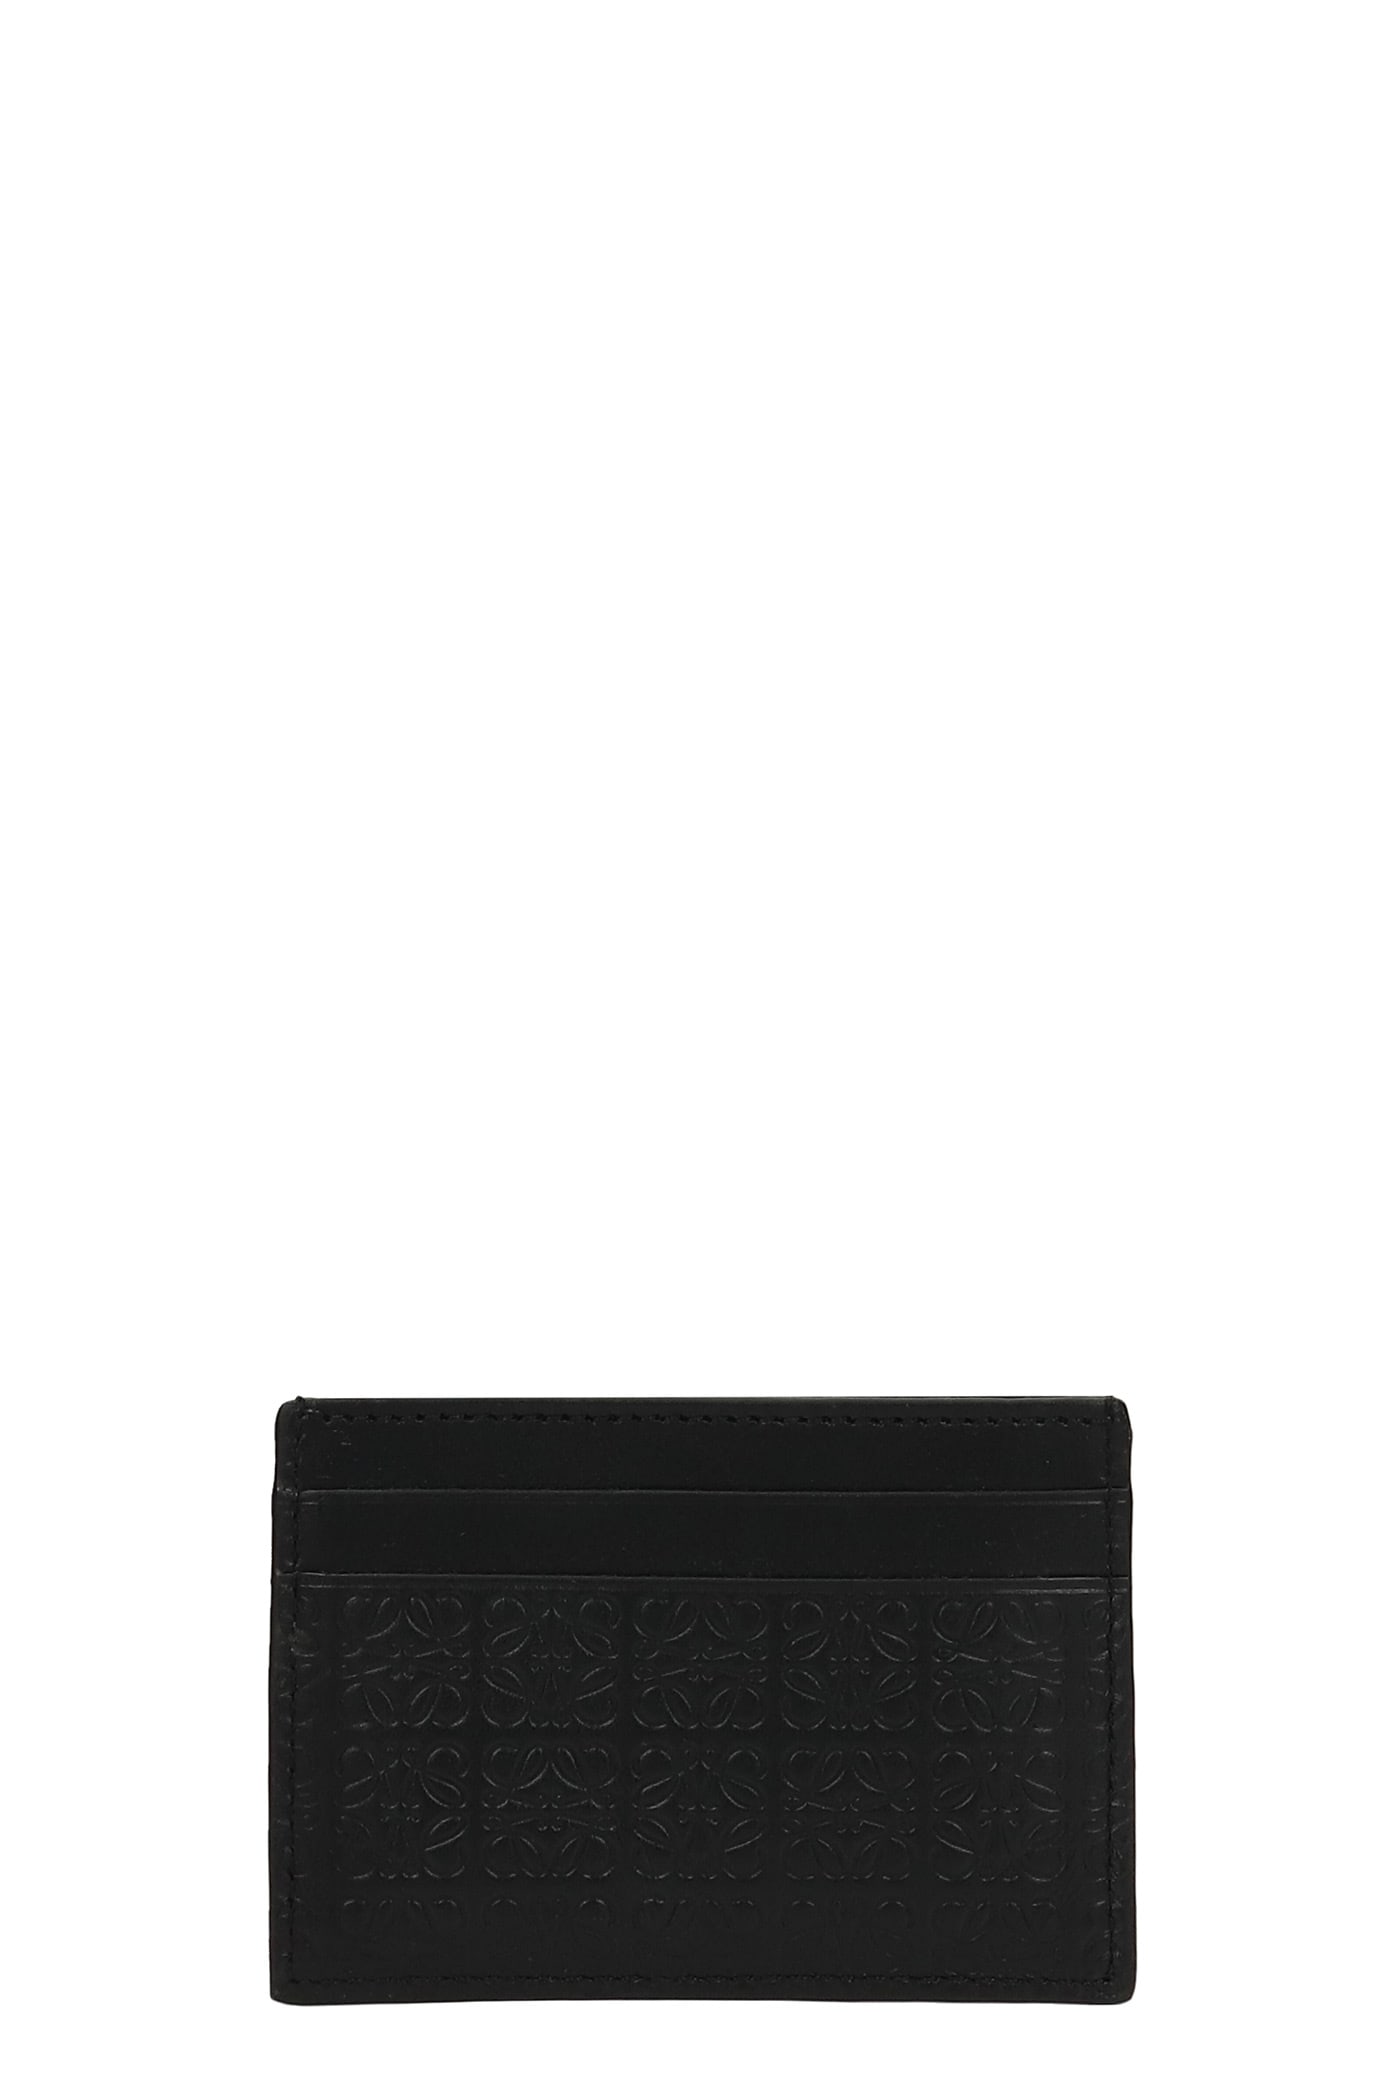 Loewe Wallet In Black Leather